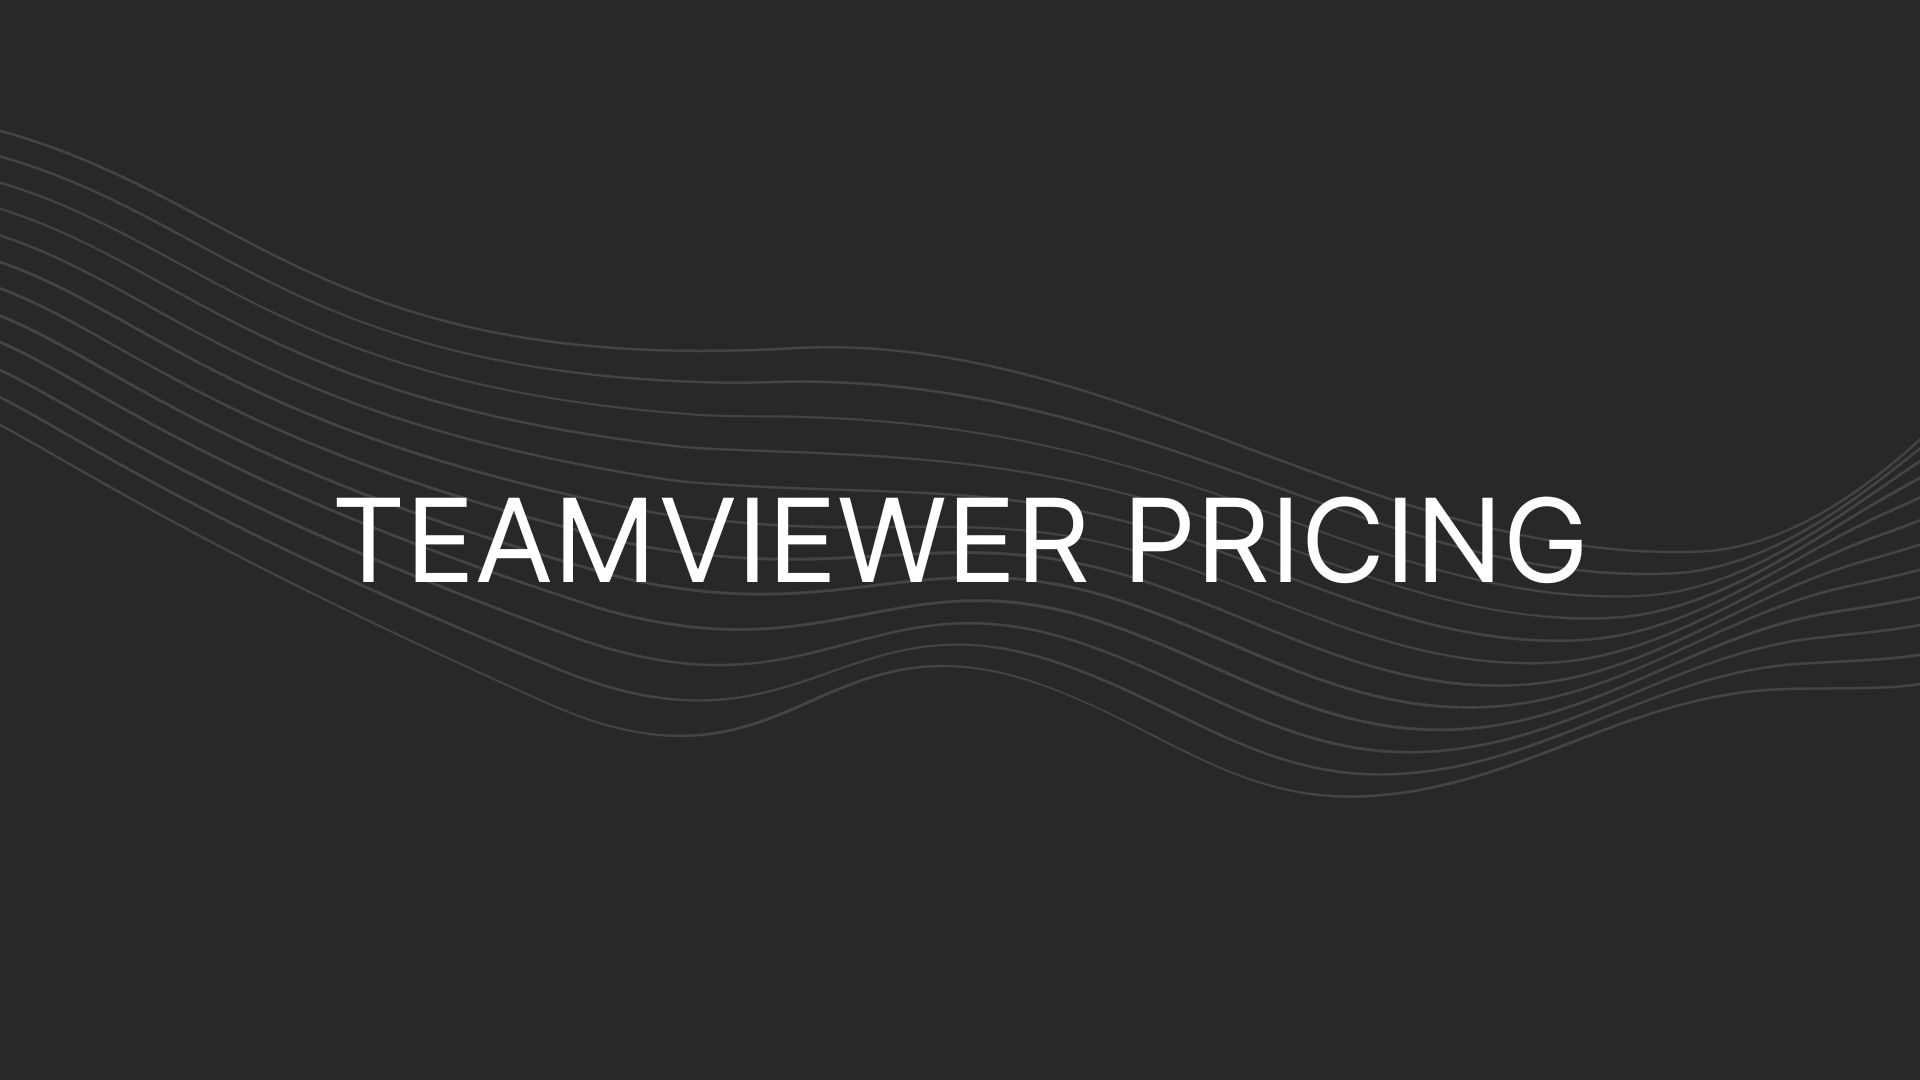 Teamviewer Pricing